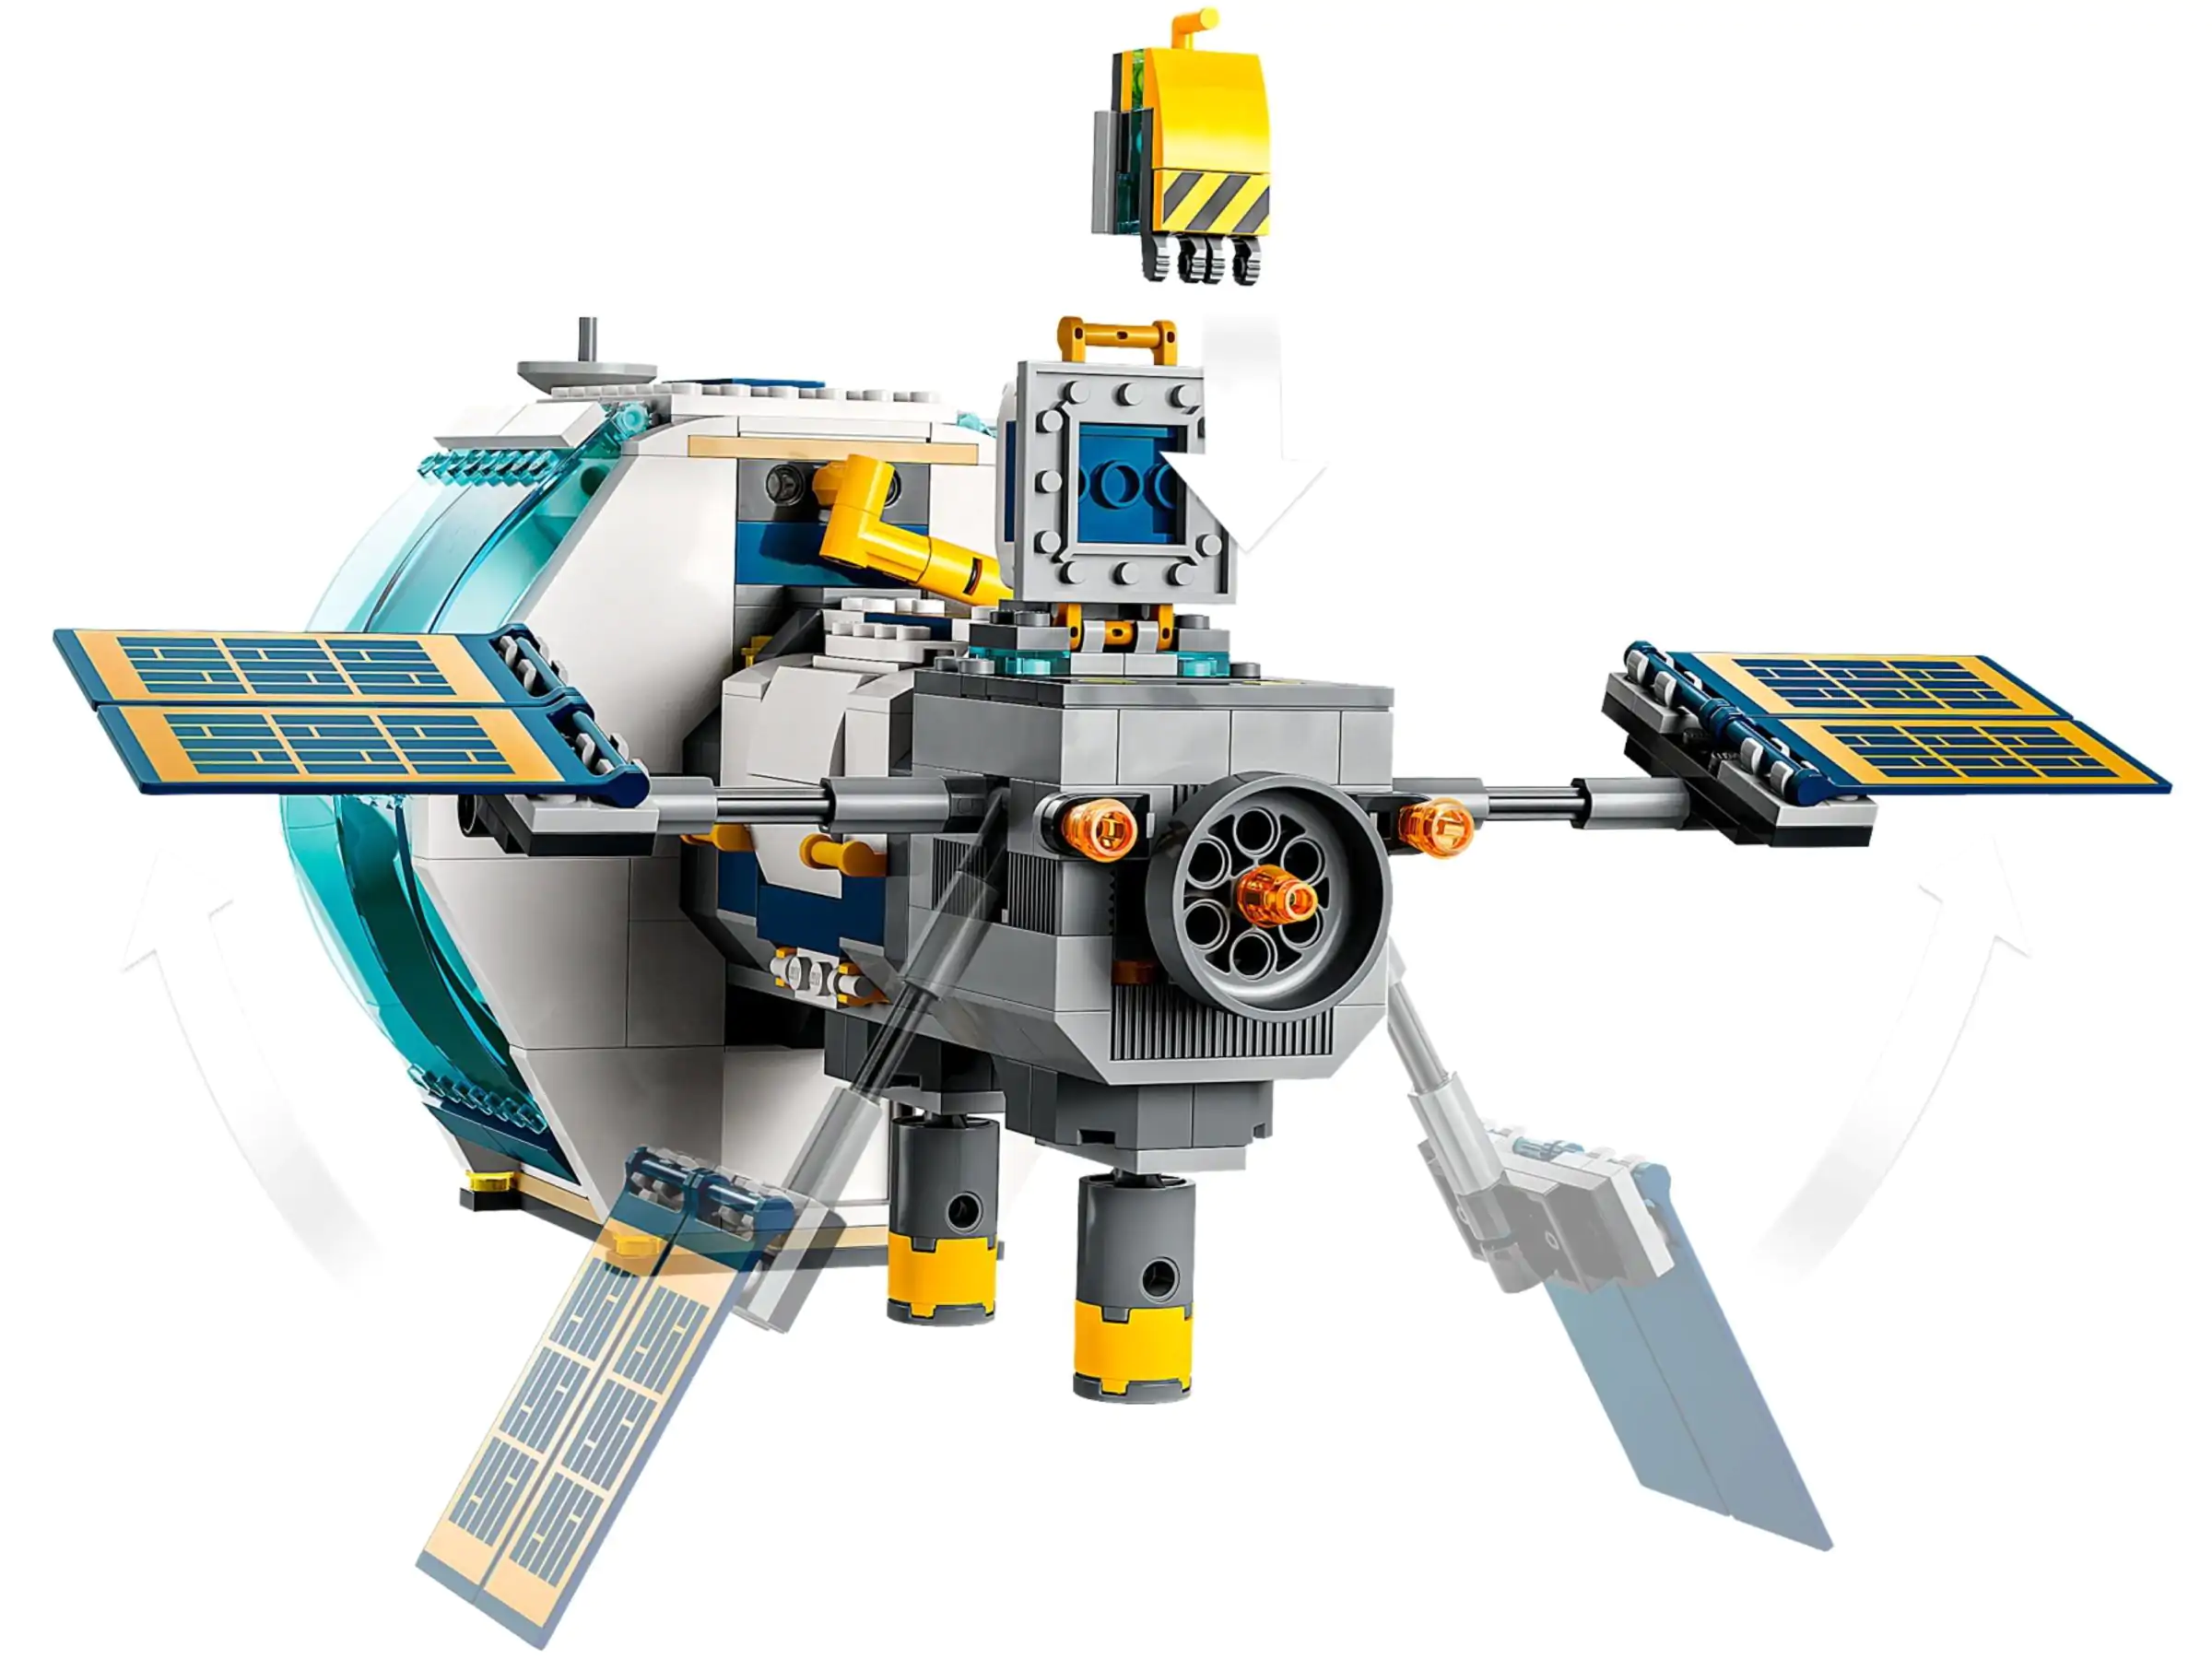 LEGO City Ruimtestation op de Maan - 60349